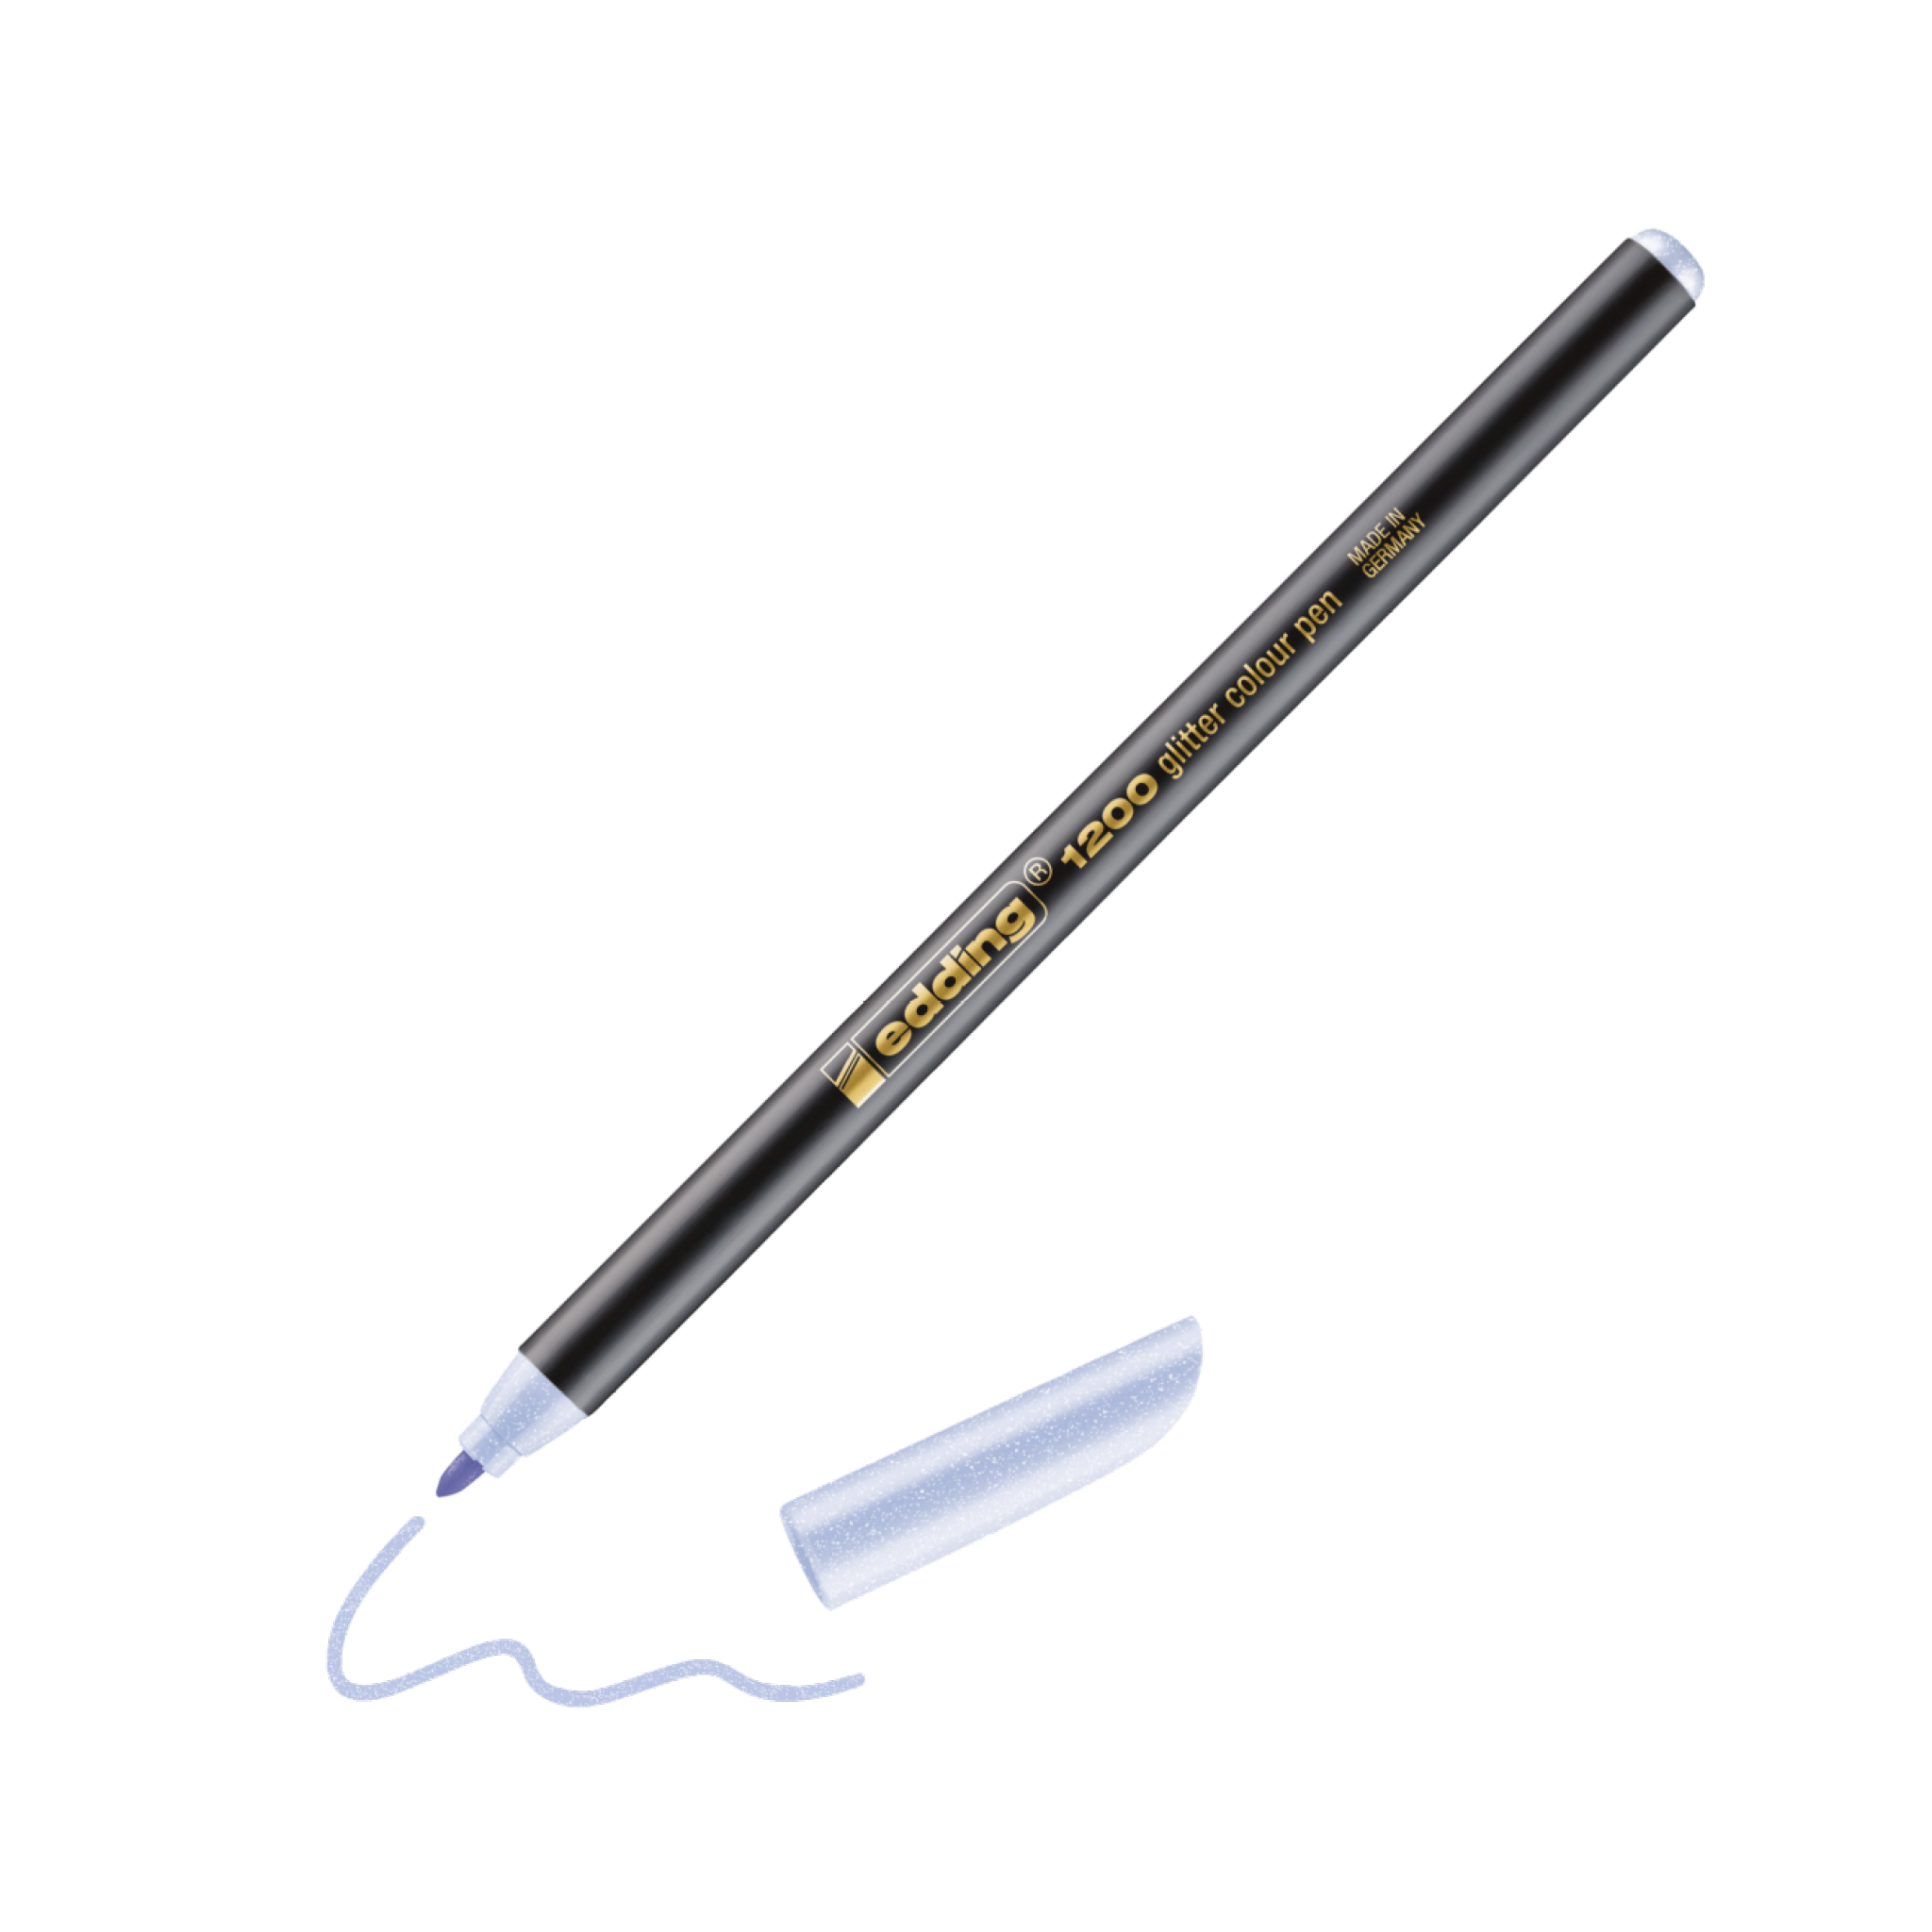 Eine digitale Illustration eines schwarzen, glatten Edding 1200 Glitzer Fasermalers mit feiner Spitze und silbernen Akzenten und der Aufschrift "Copic Zeichenstift". Die Kappe ist abgenommen und liegt neben dem Stift, mit einem Squig